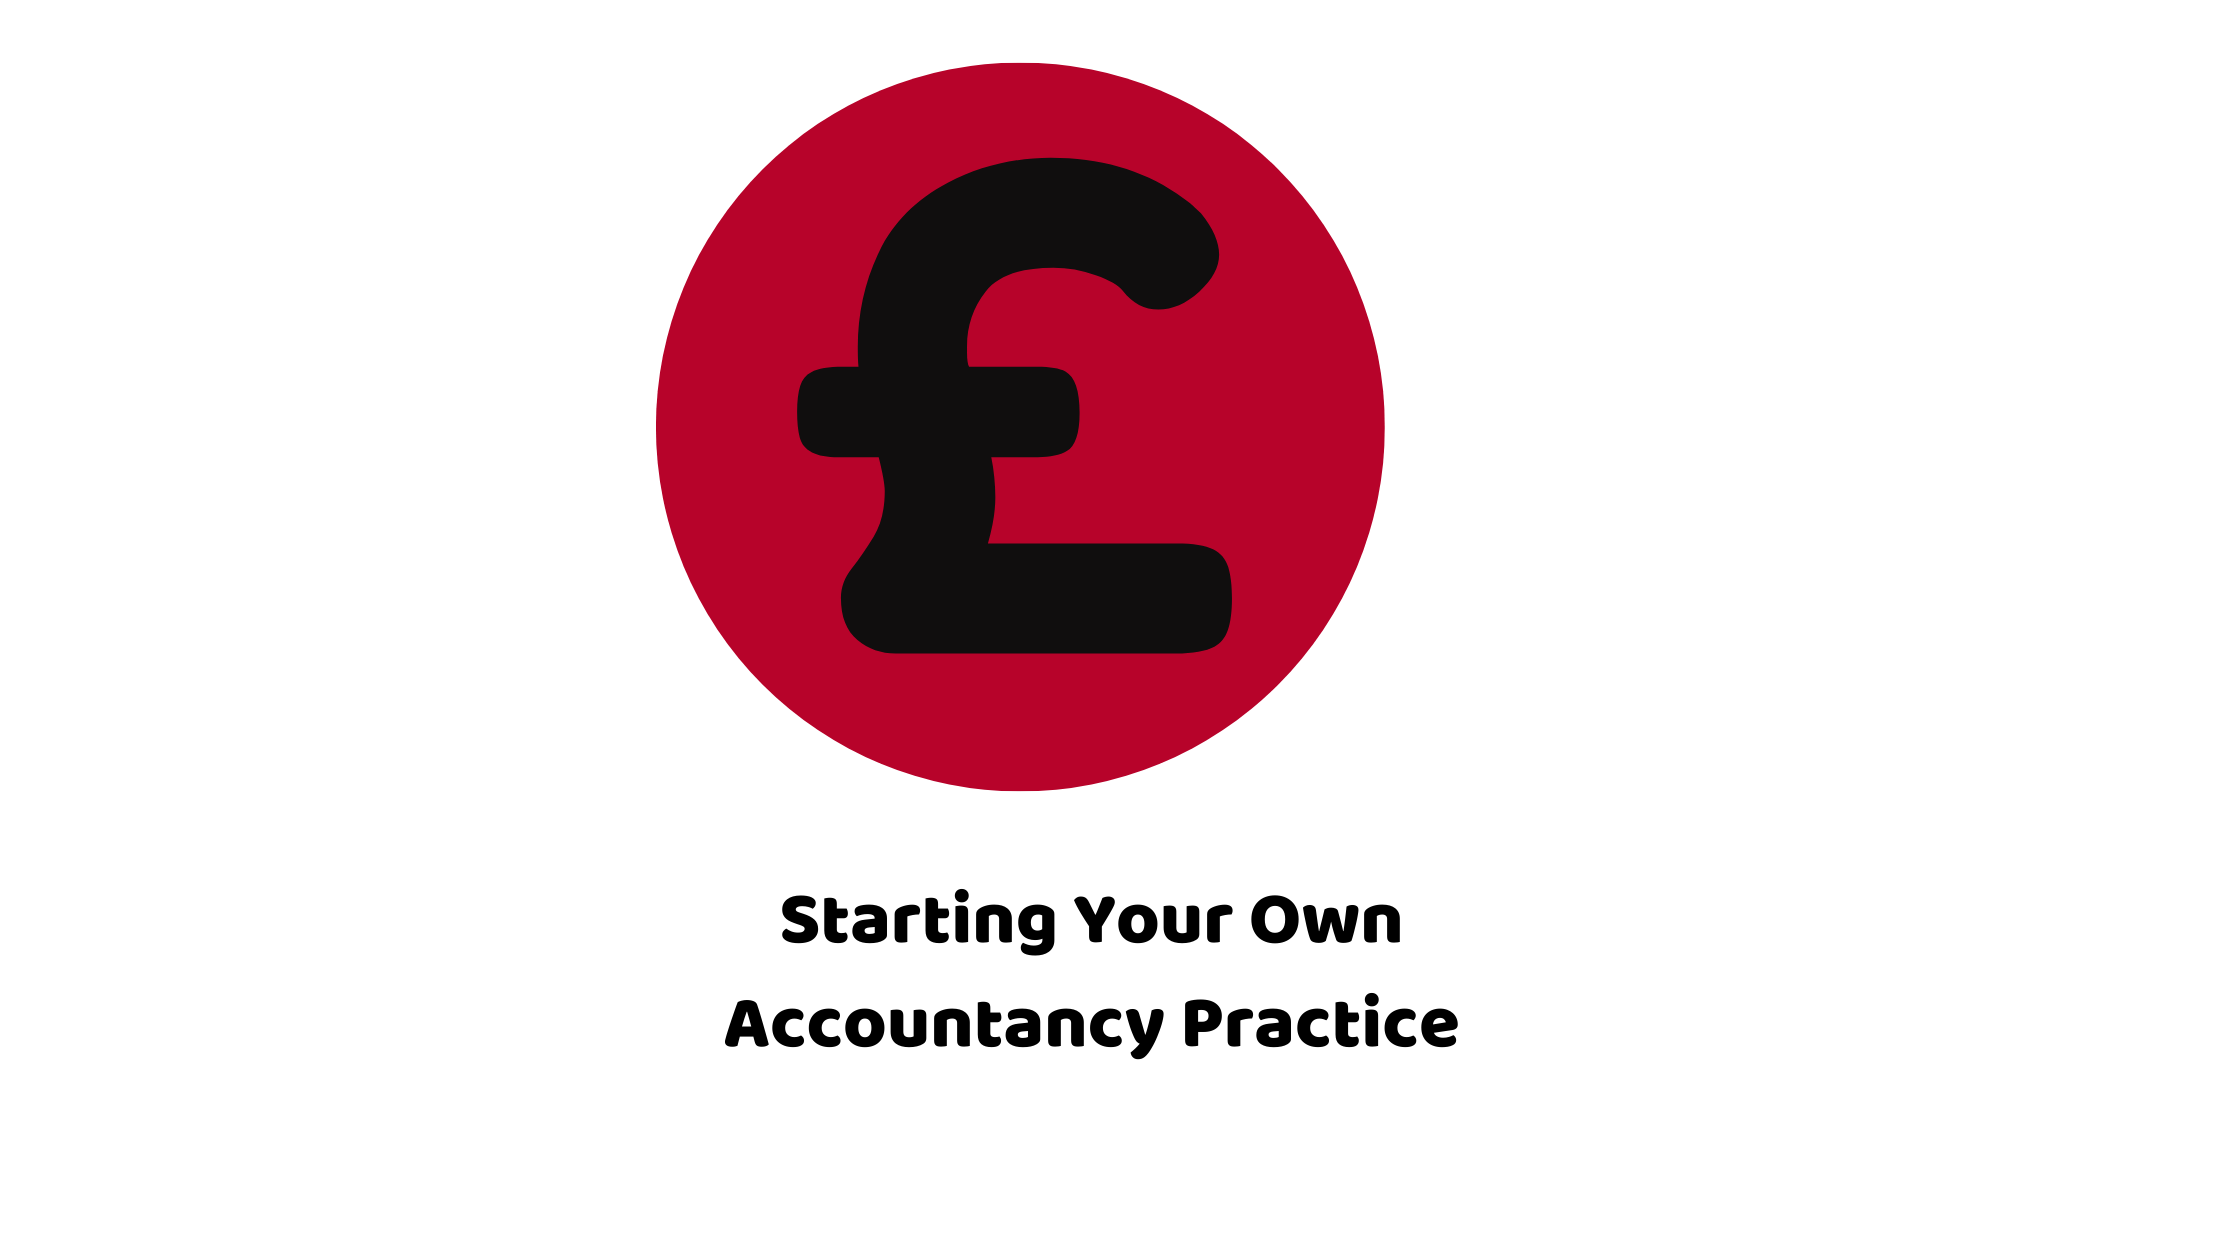 Accountancy Practice